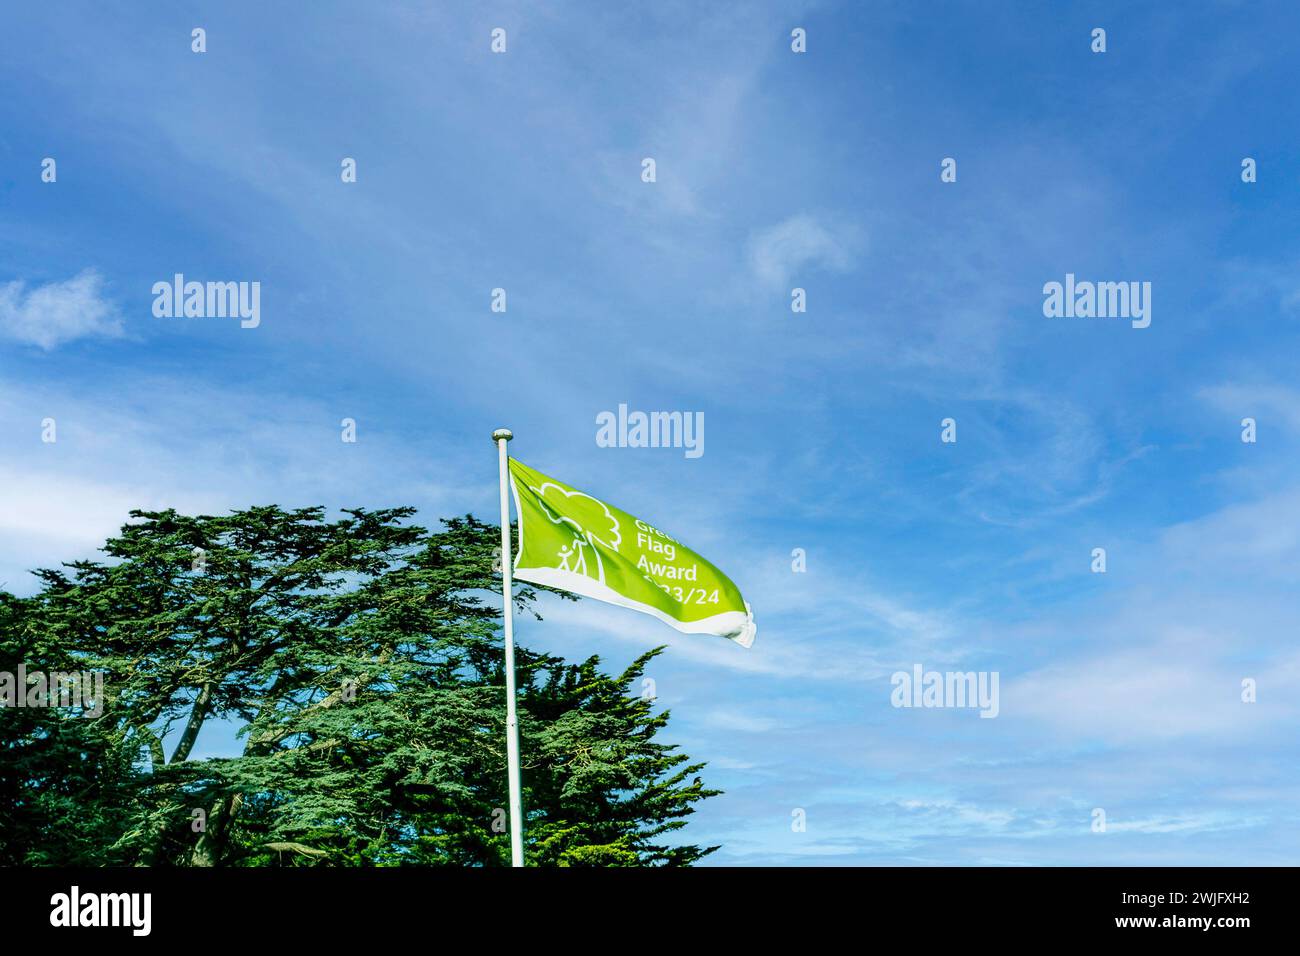 Le drapeau vert volant à Corkagh Park Clondalkin, Dublin Irlande, récompensé pour leur accomplissement dans la gestion des espaces verts et l'excellence des visiteurs à Banque D'Images